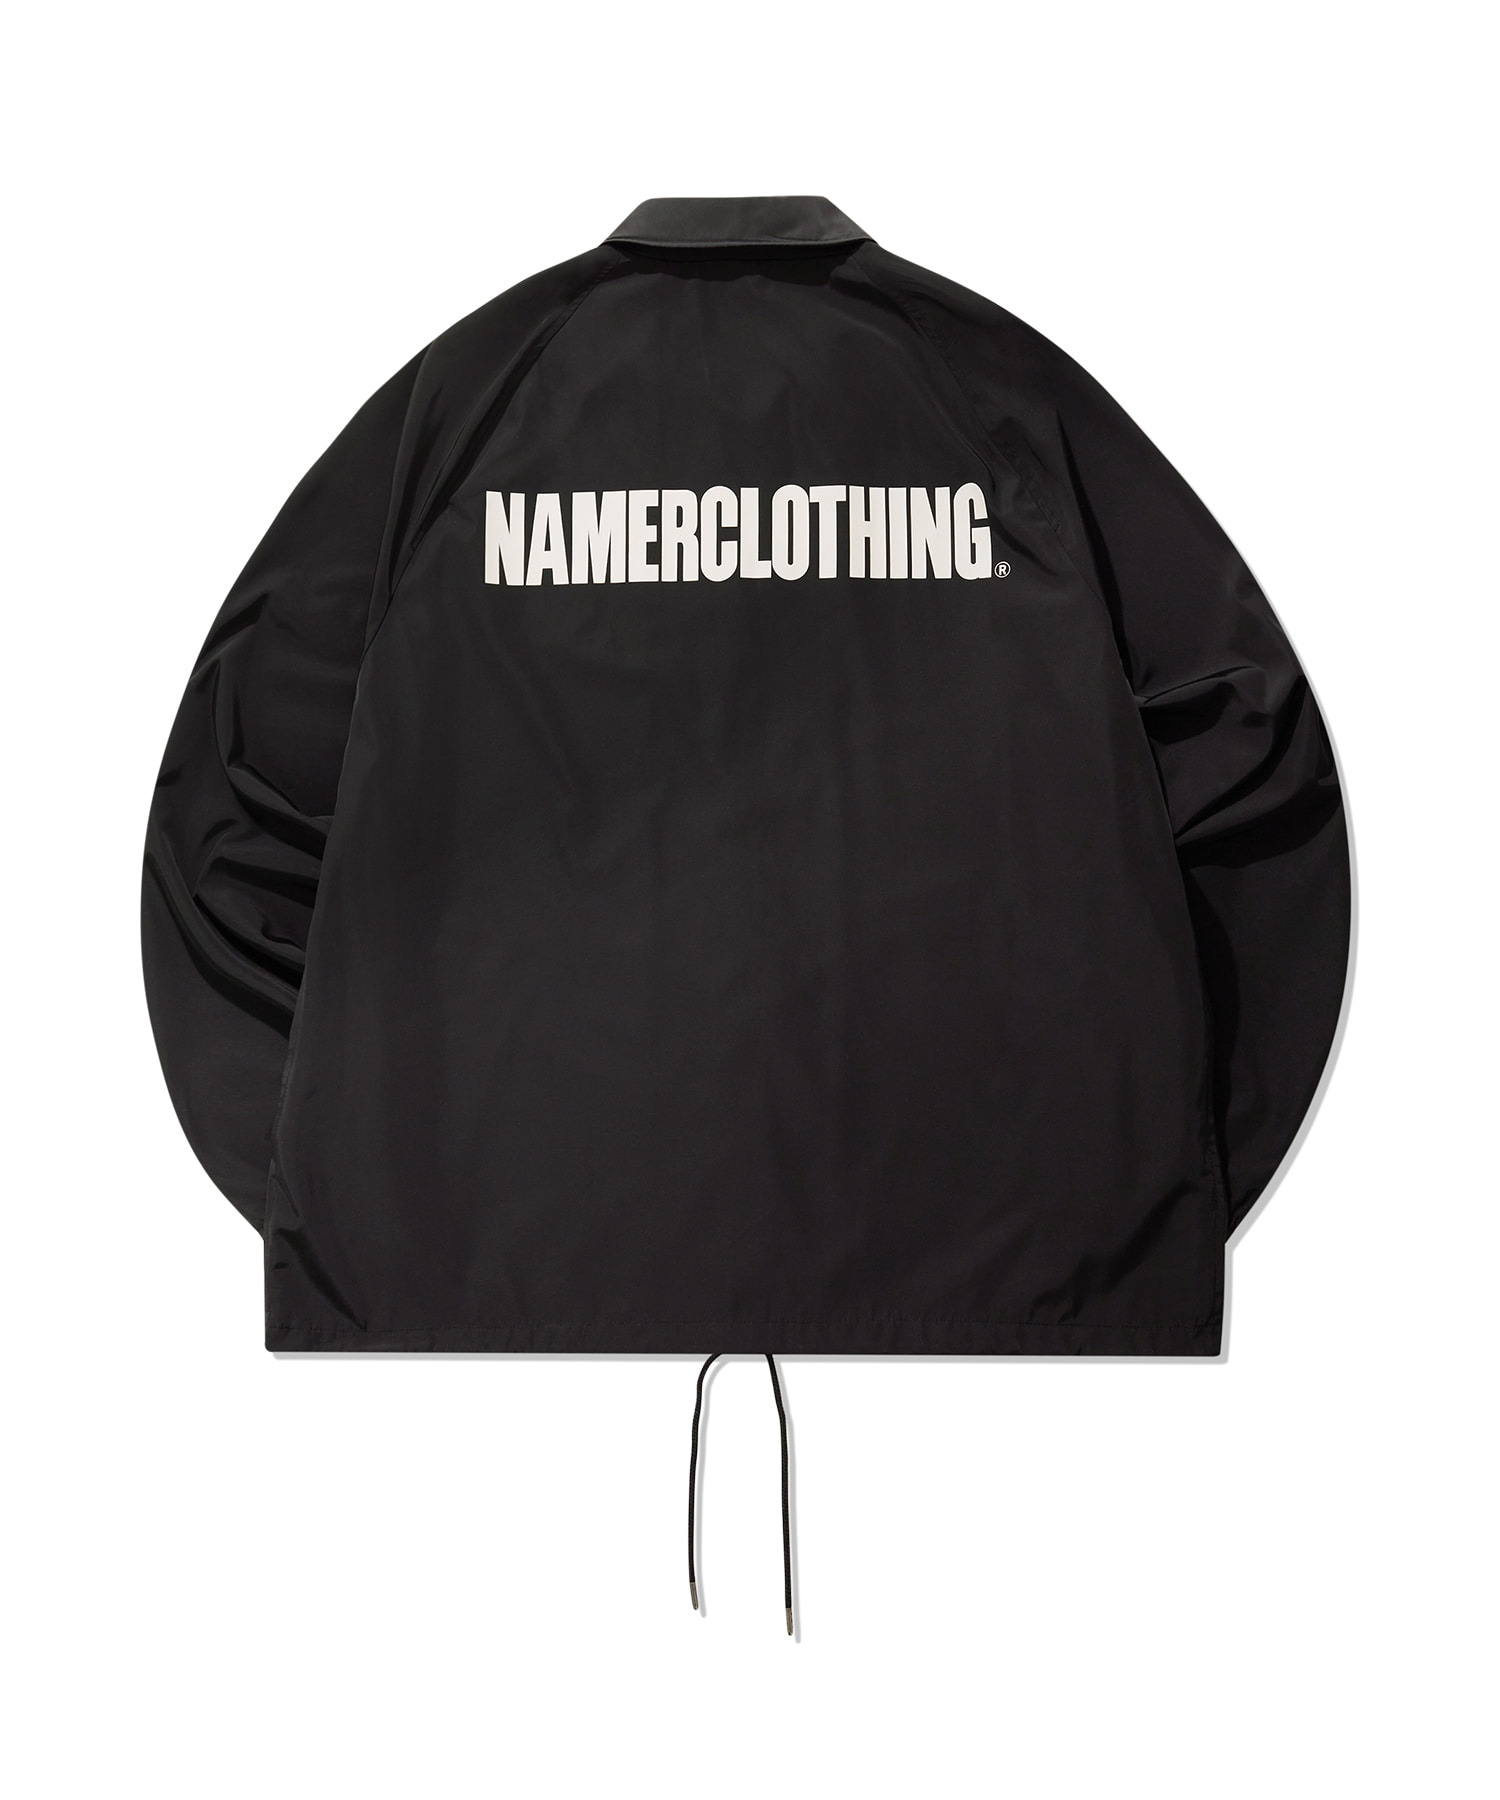 Namerclothing®